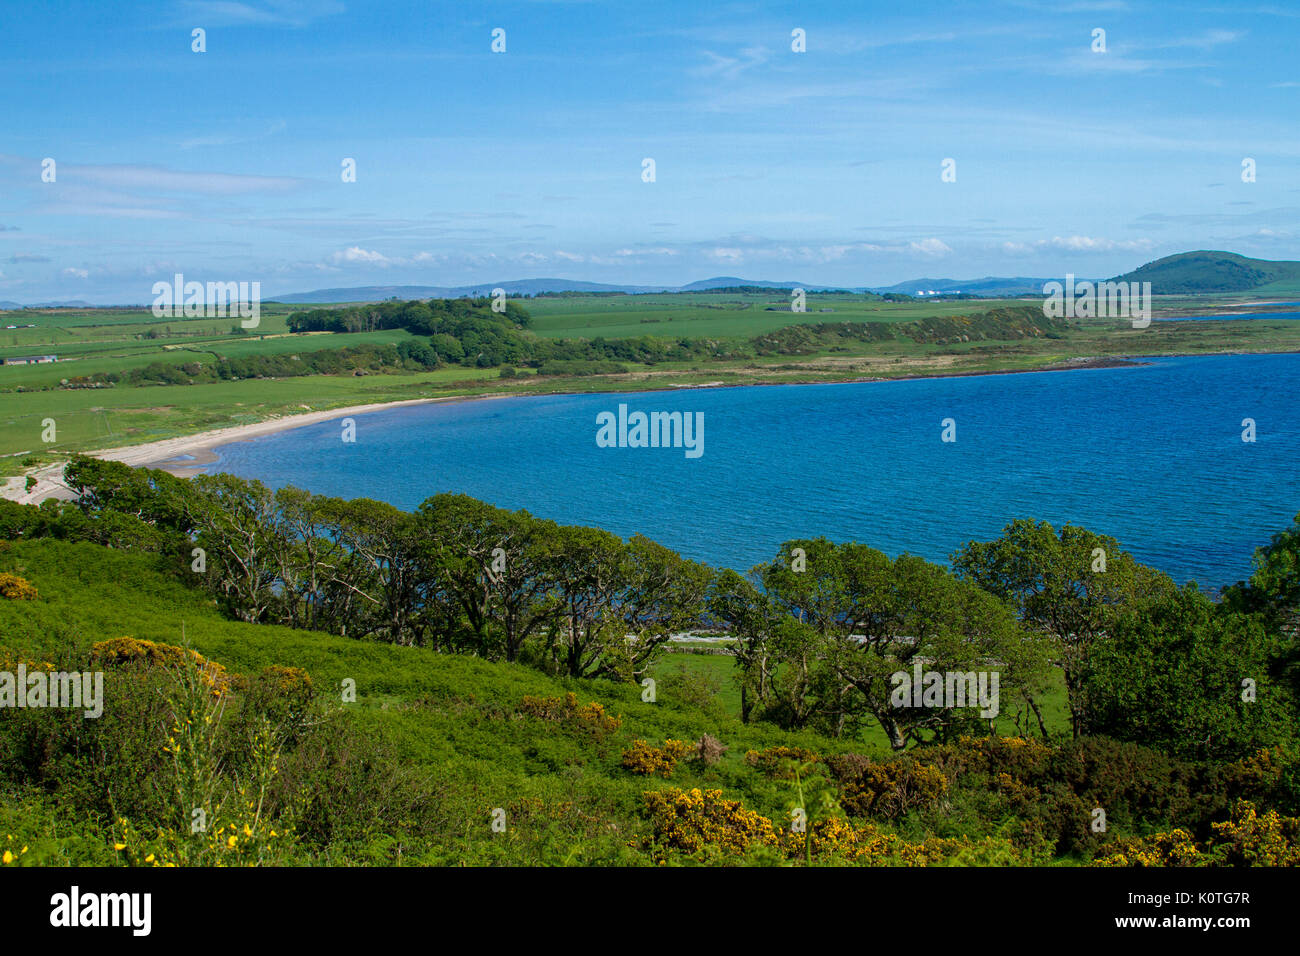 El paisaje costero con vista de Scalpsie playa Esmeralda, campos, árboles bajos en la isla de Bute, con montañas de Escocia continental más allá del océano azul Foto de stock